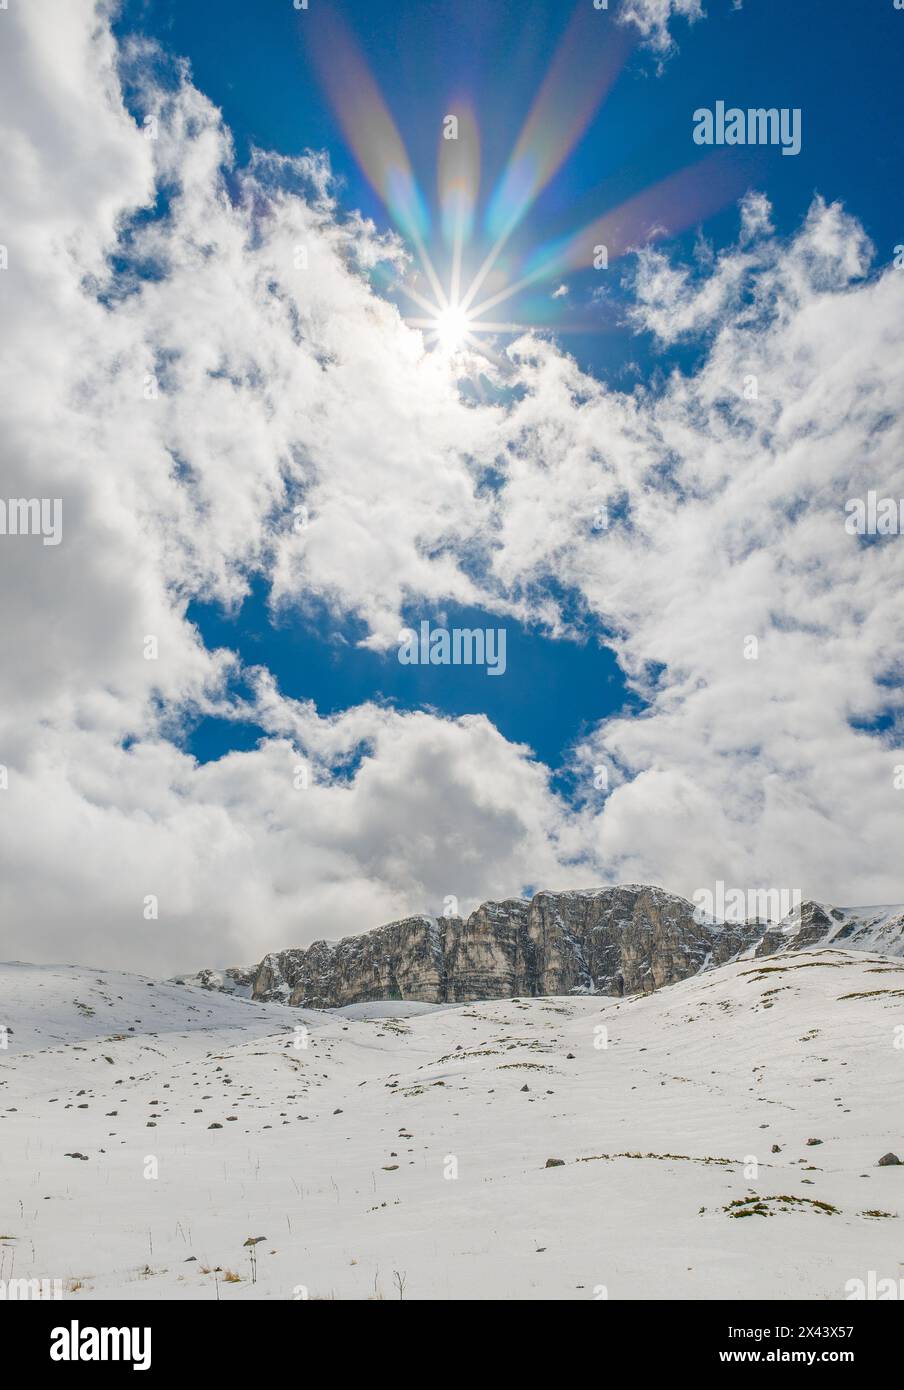 Rifugio Sebastiani, Italia - il rifugio con neve nel parco naturale del Sirente Velino, dall'altopiano sciistico di campo felice in Abruzzo. Foto Stock